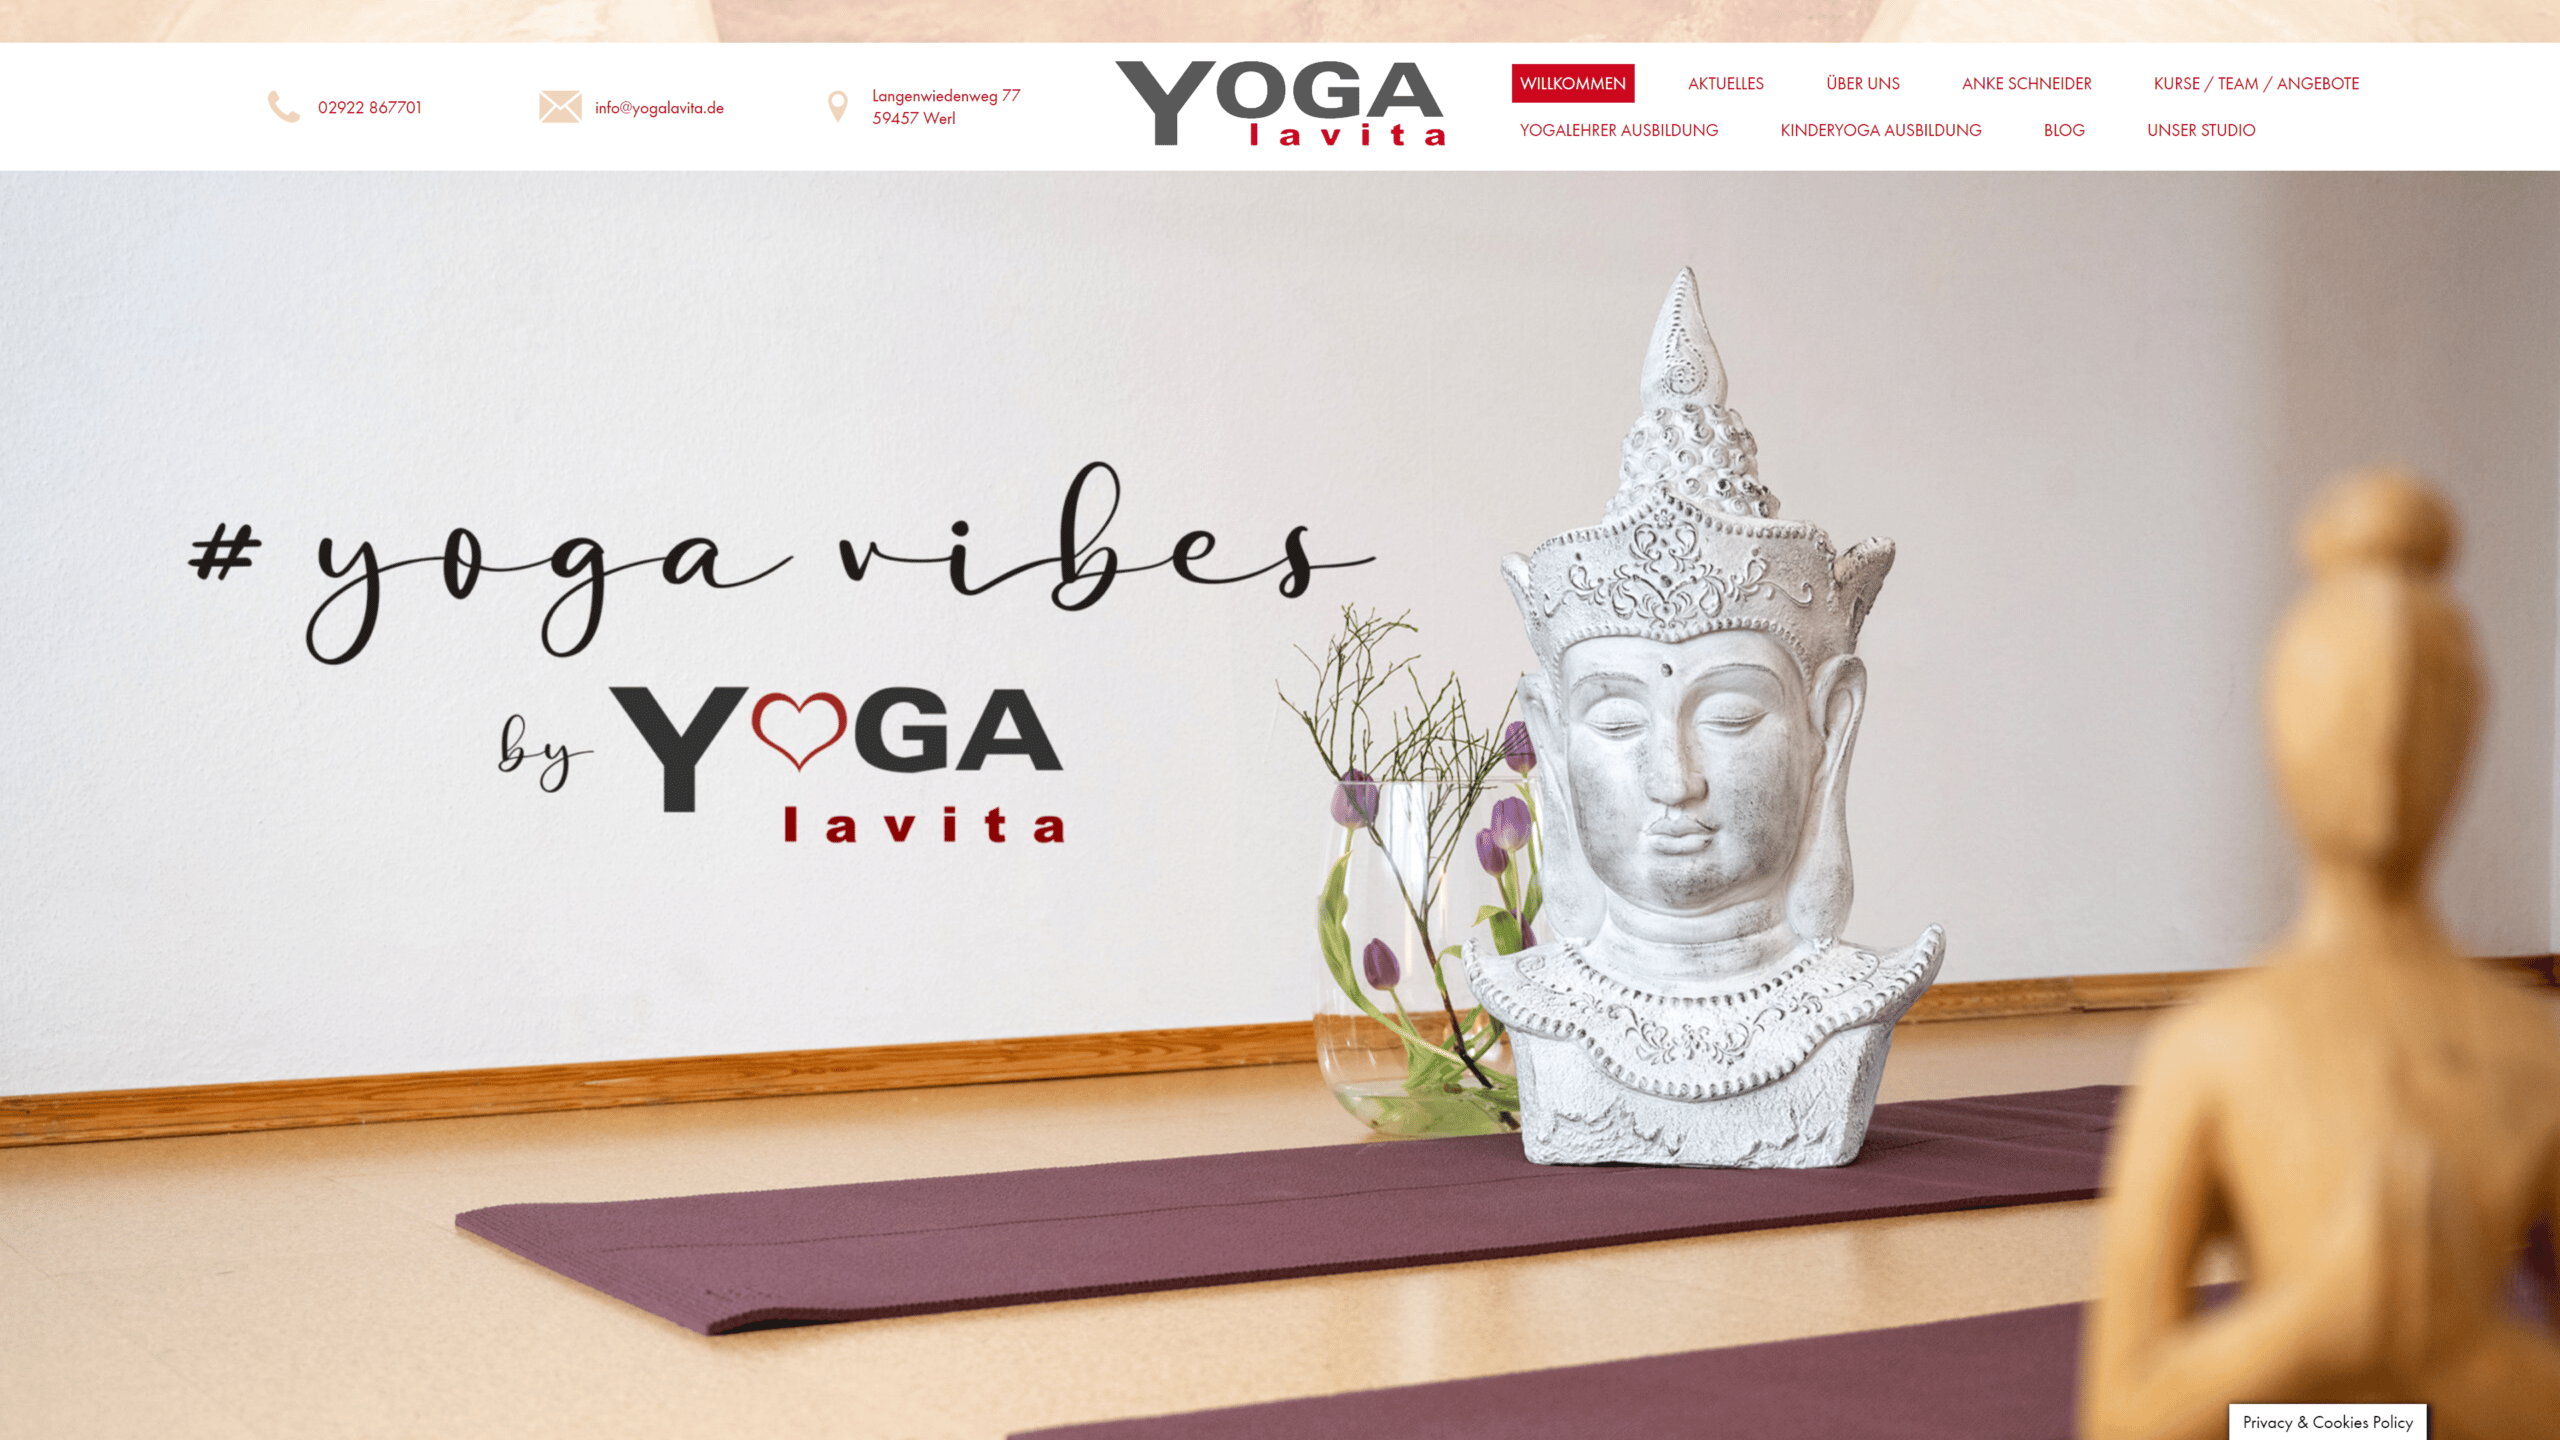 Deskopansicht von "Projekt: Yogalavita"